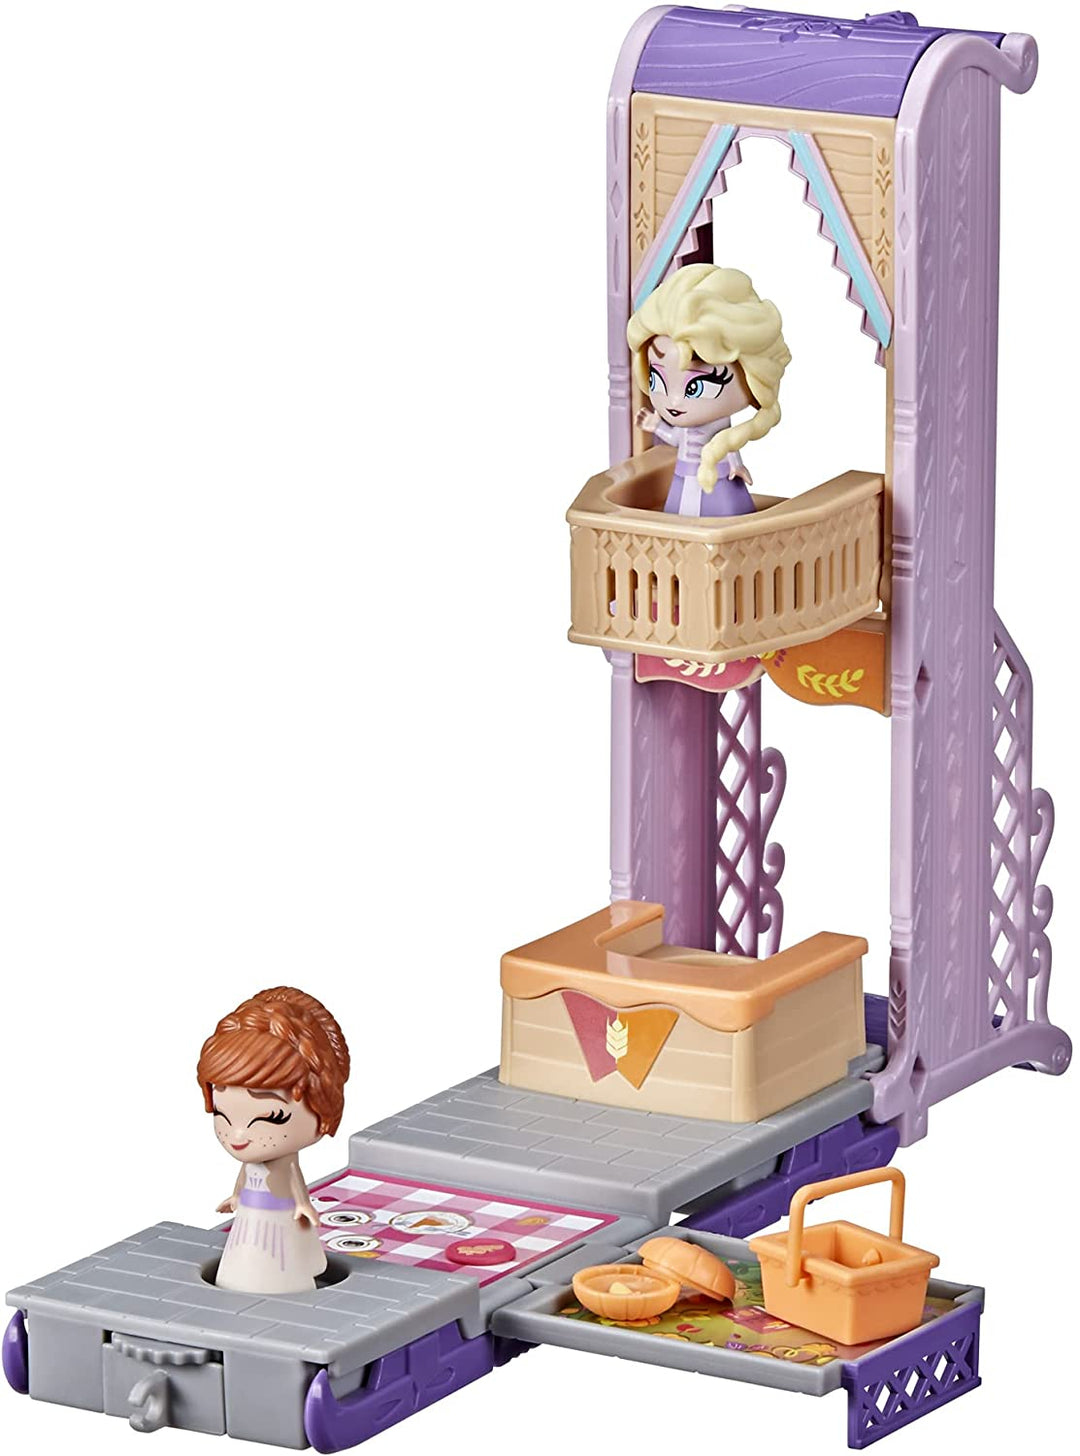 Hasbro Disney Frozen,F1823 Disney's Frozen 2 Twirlabouts Picknick-Spielset Schlitten-zu-Schloss mit Elsa- und Anna-Puppen